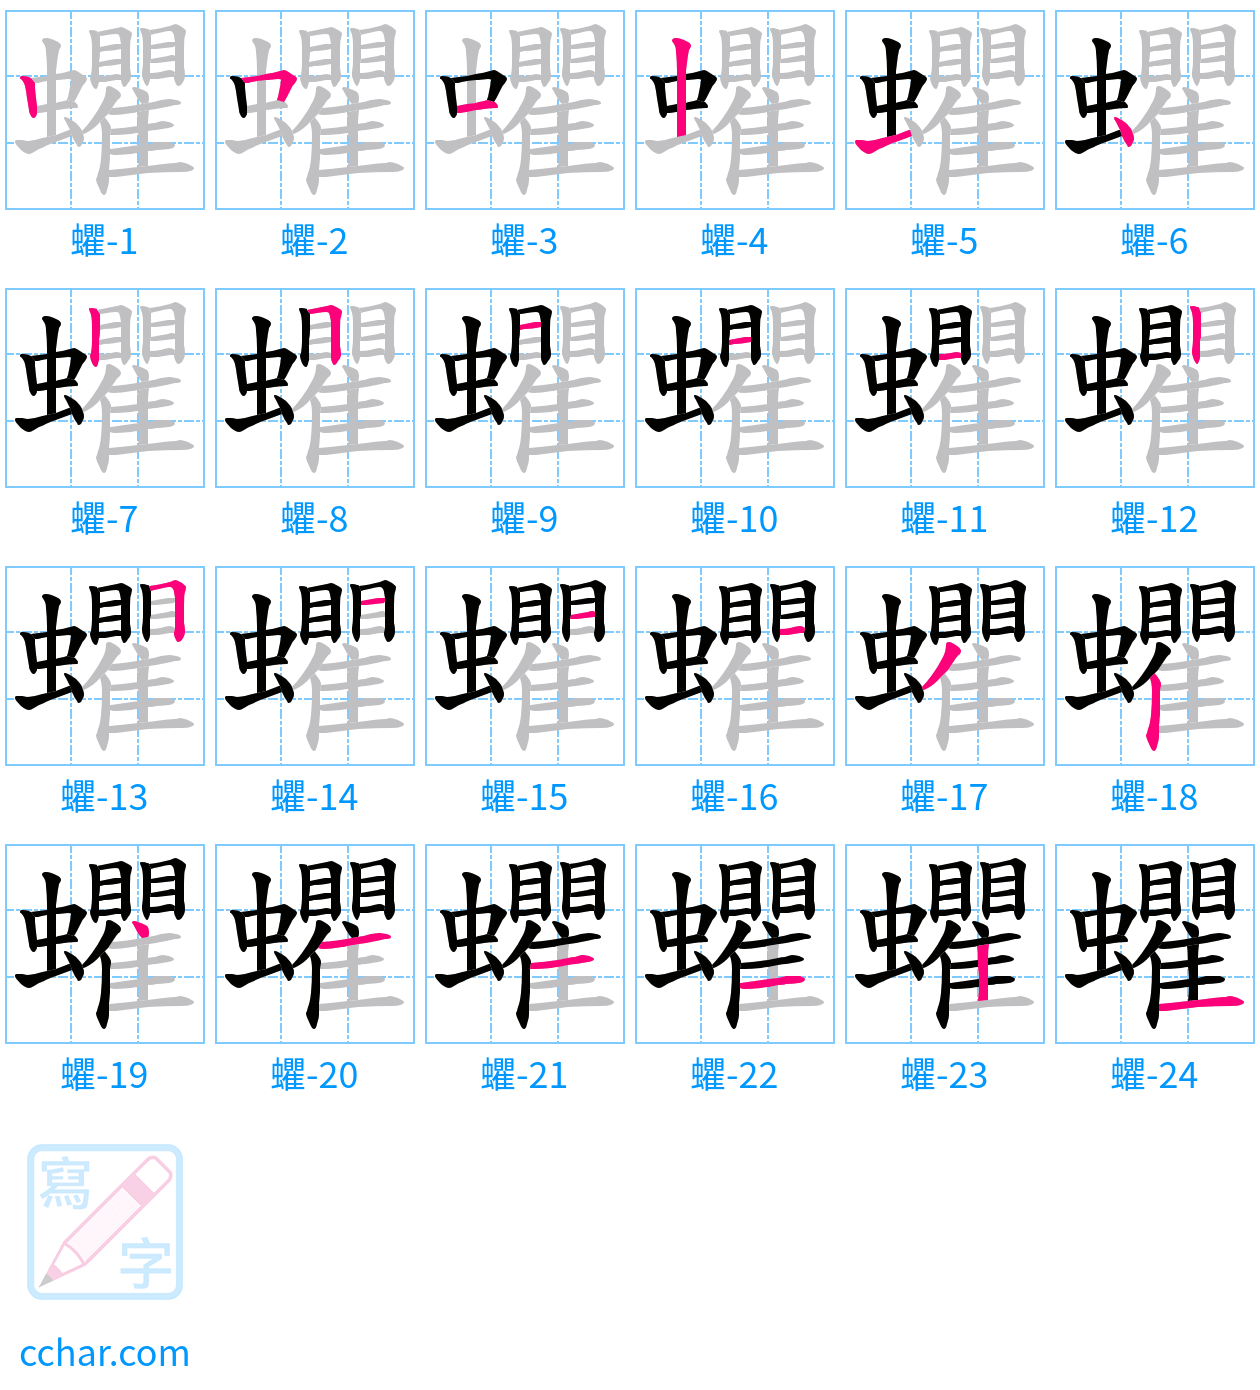 蠷 stroke order step-by-step diagram